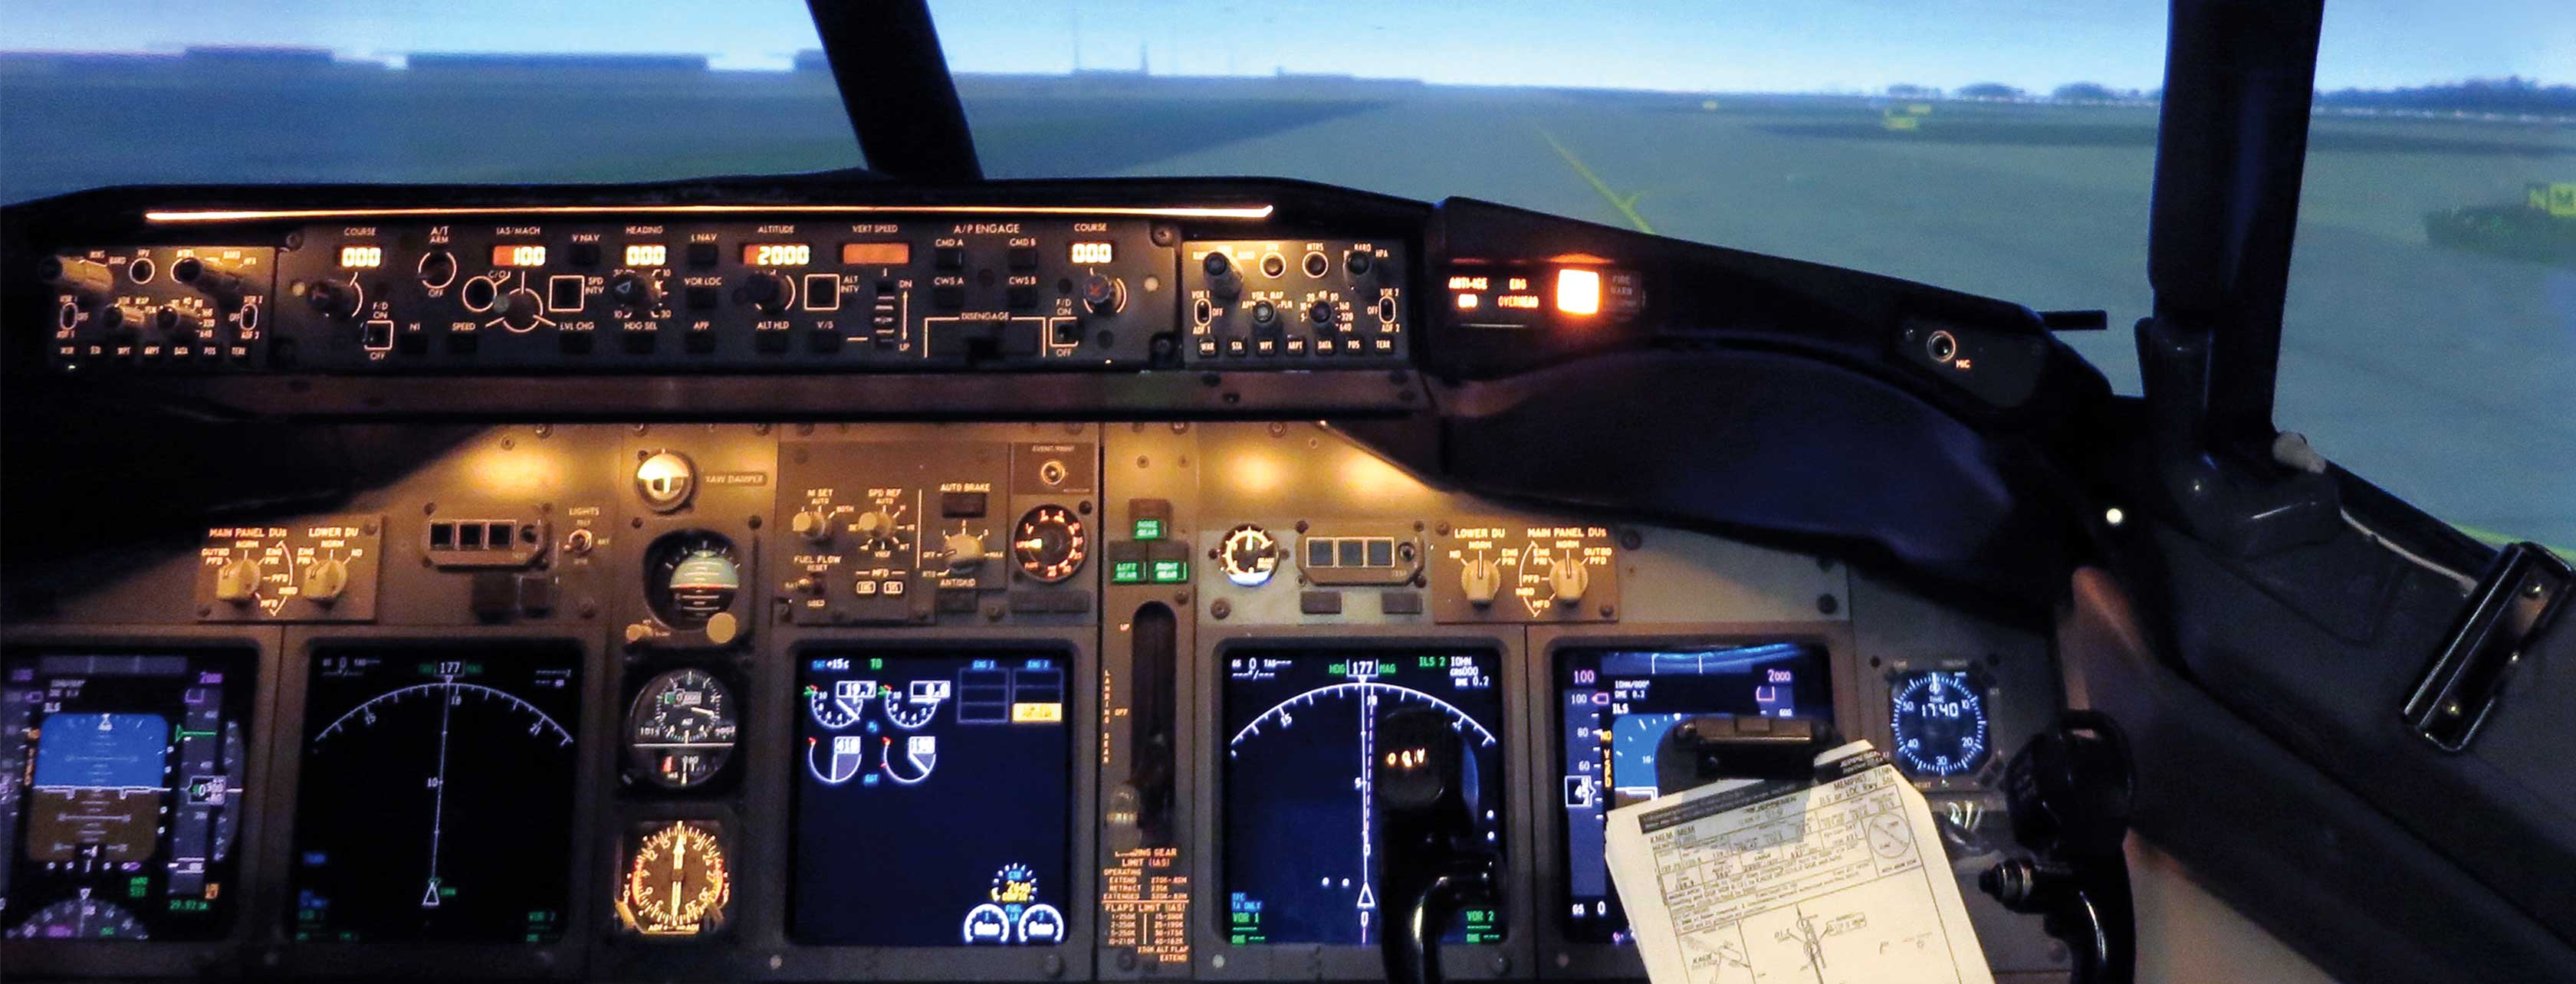 Interior of a Boeing 737 simulator